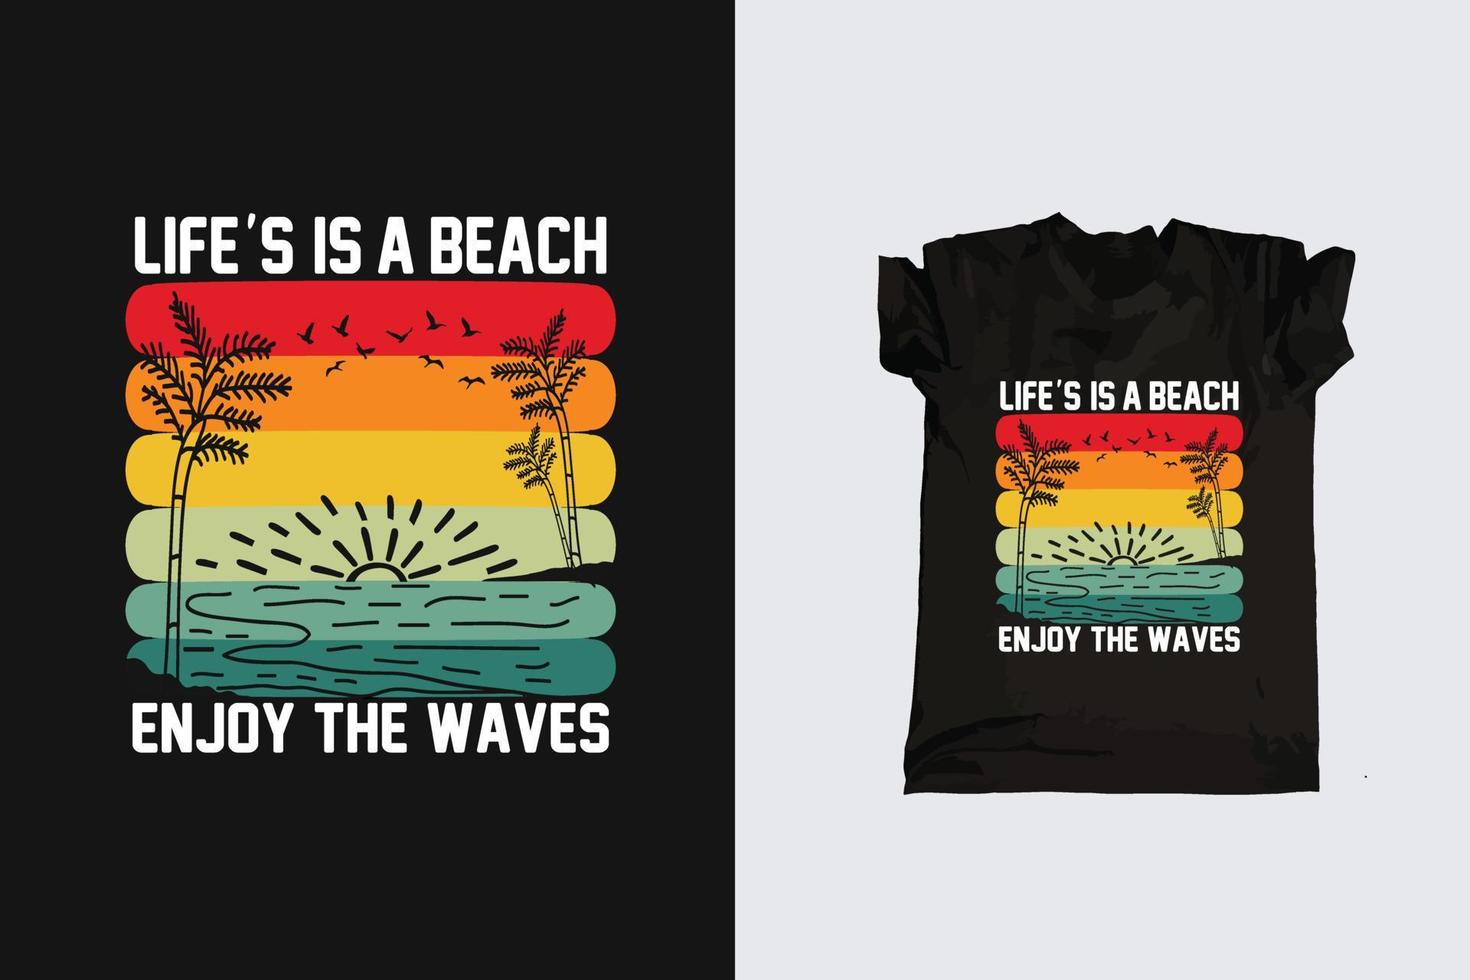 Jahrgang retro Sonnenuntergang Sommer- Strand T-Shirt Design zum Sommer- Stimmung nur, Kalifornien Strand genießen Sommer- mit Palme Bäume Liegestuhl Regenschirm T-Shirt Grafik Banner, Poster, Flyer Vektor Illustration